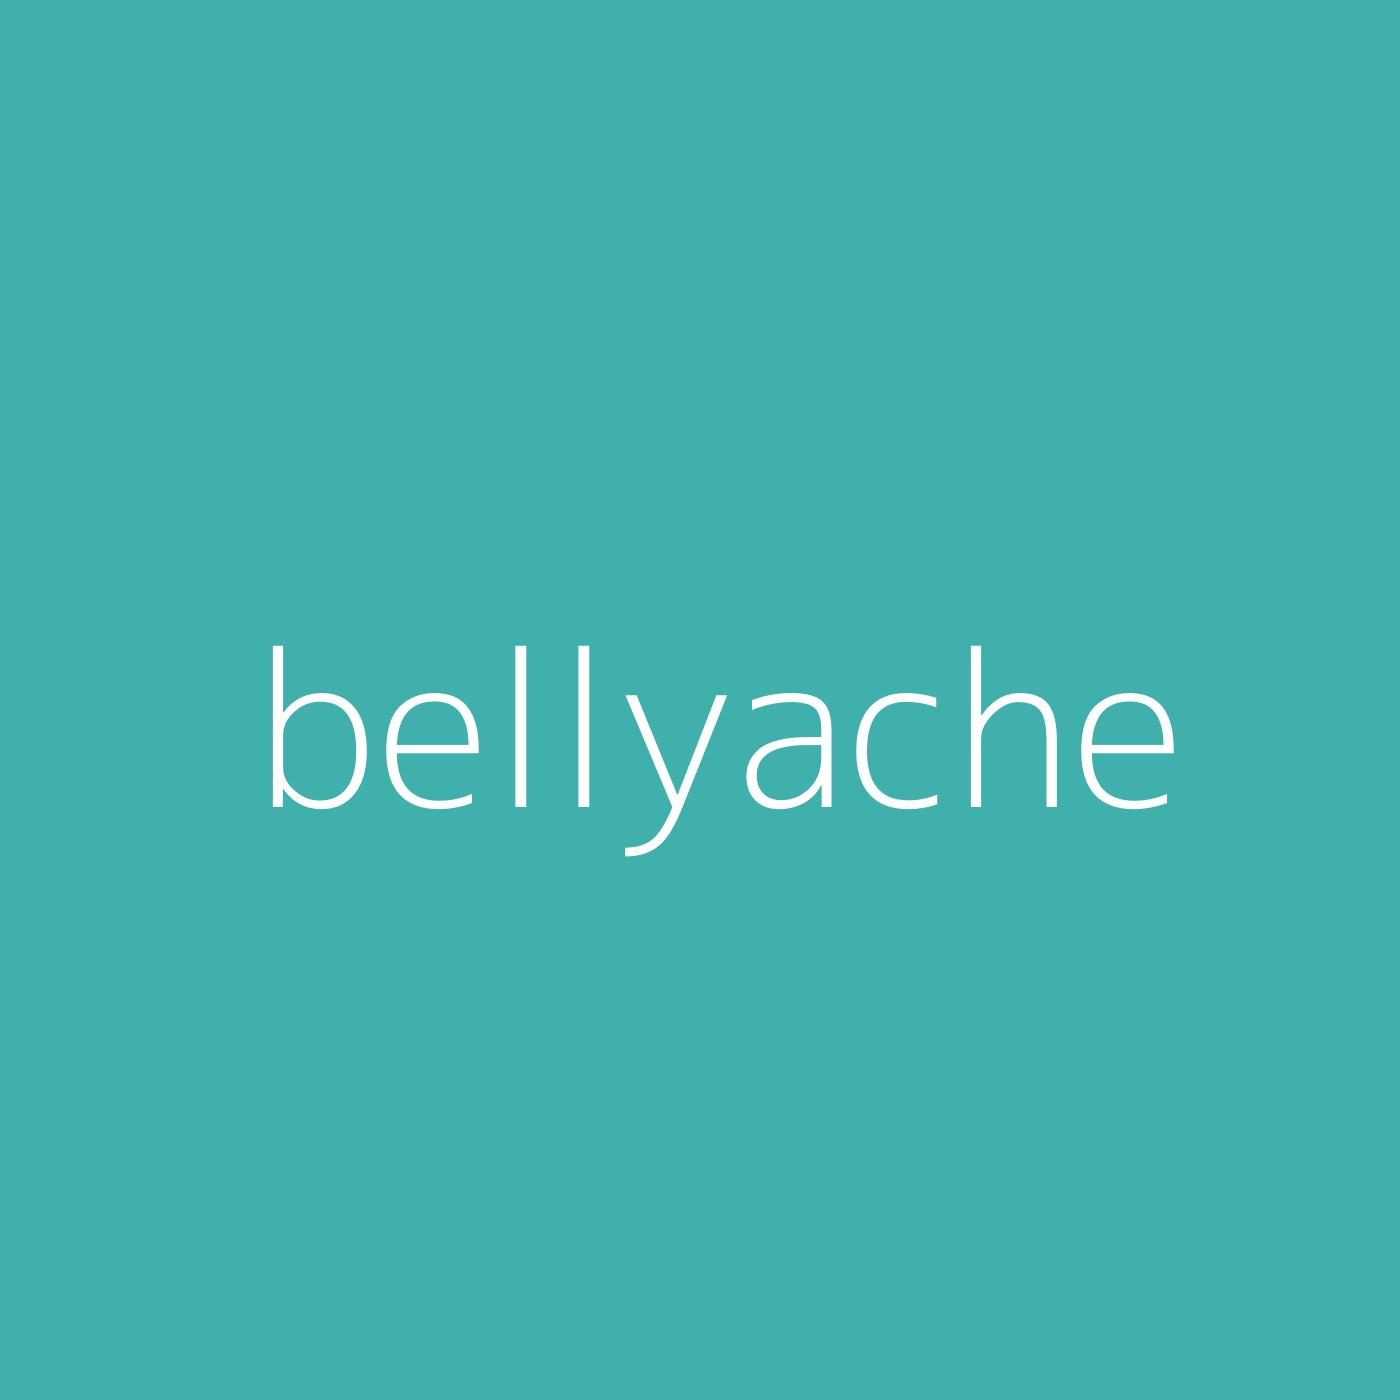 bellyache – Billie Eilish